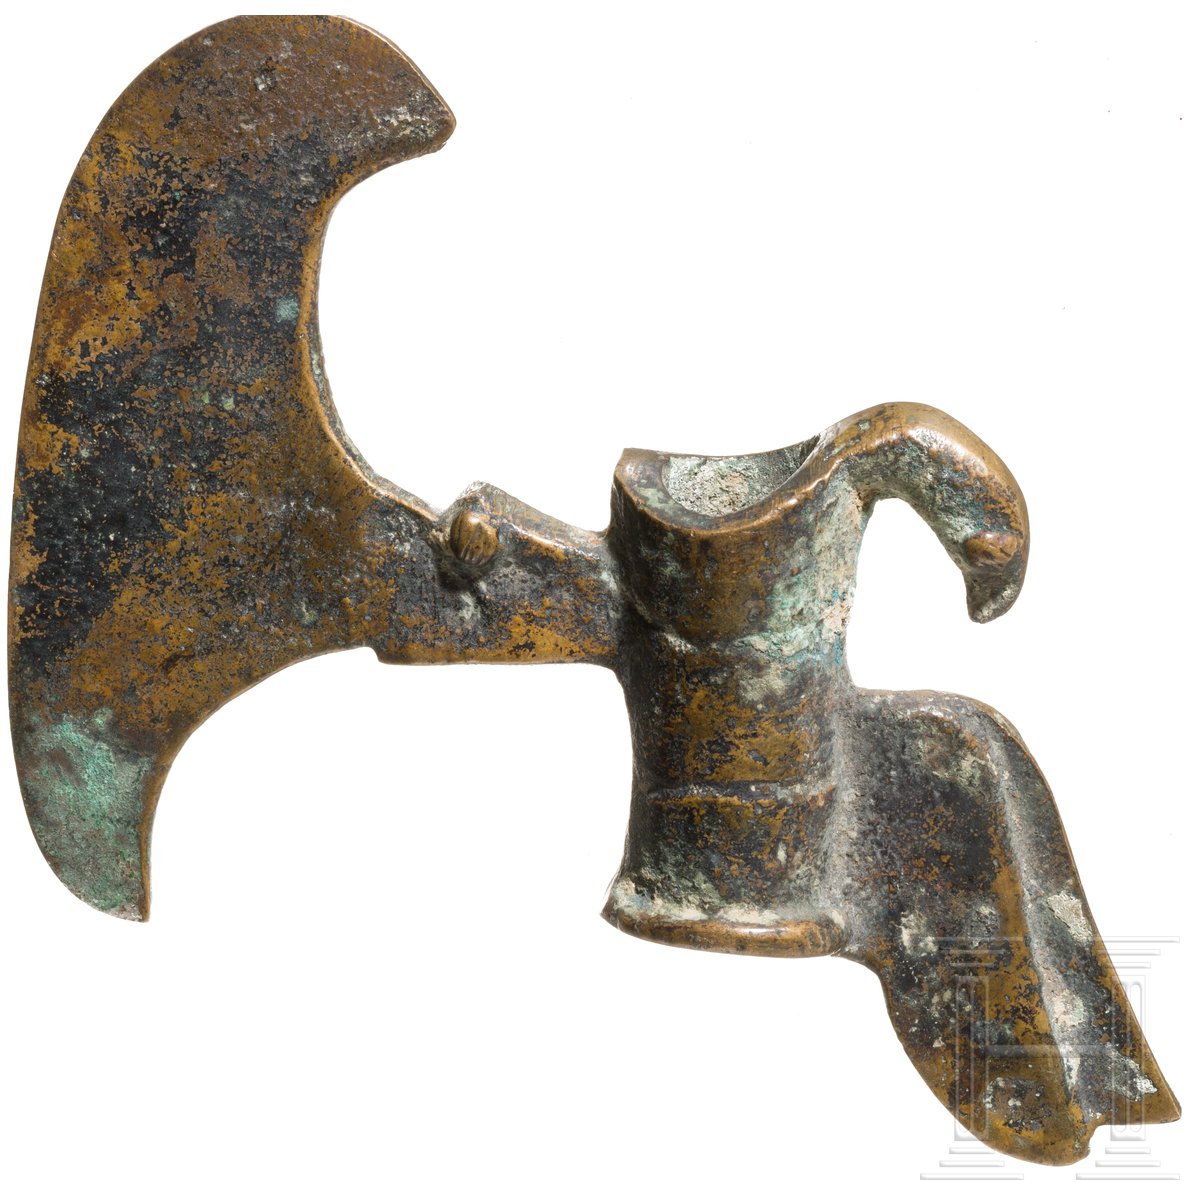 Elamitische Hellebardenaxt mit Vogel, Bronze, Luristan, Westiran, 2000 - 1750 v. Chr. - Image 3 of 3